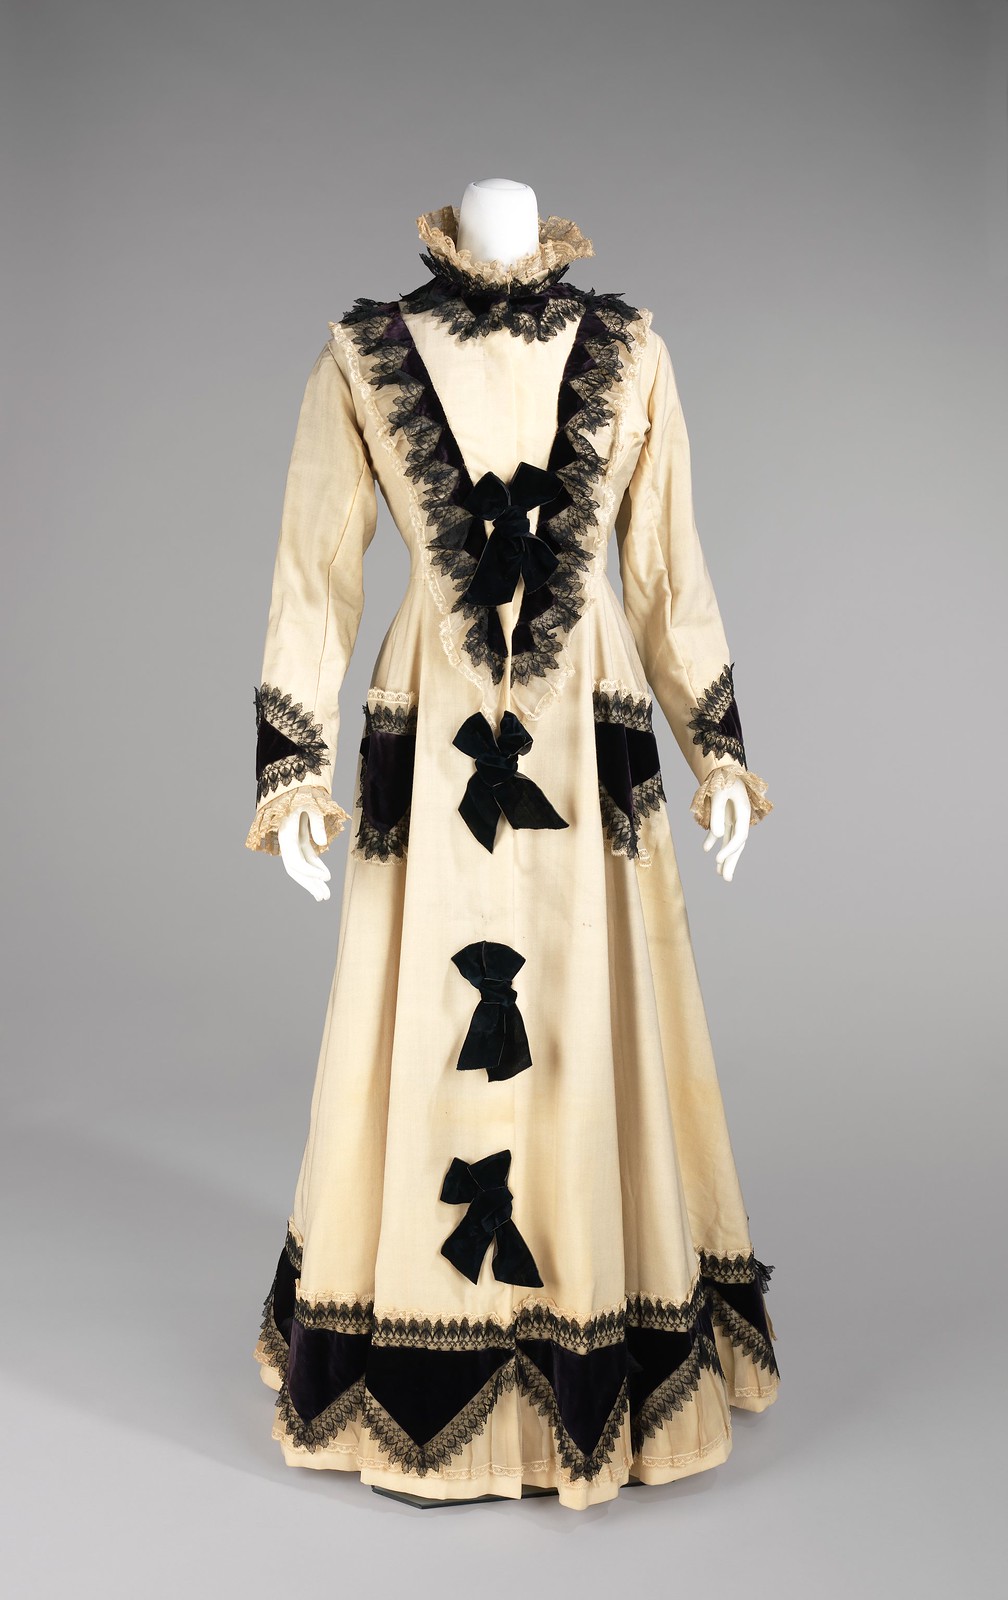 1875 Tea Gown. American. Wool, silk, cotton. metmuseum